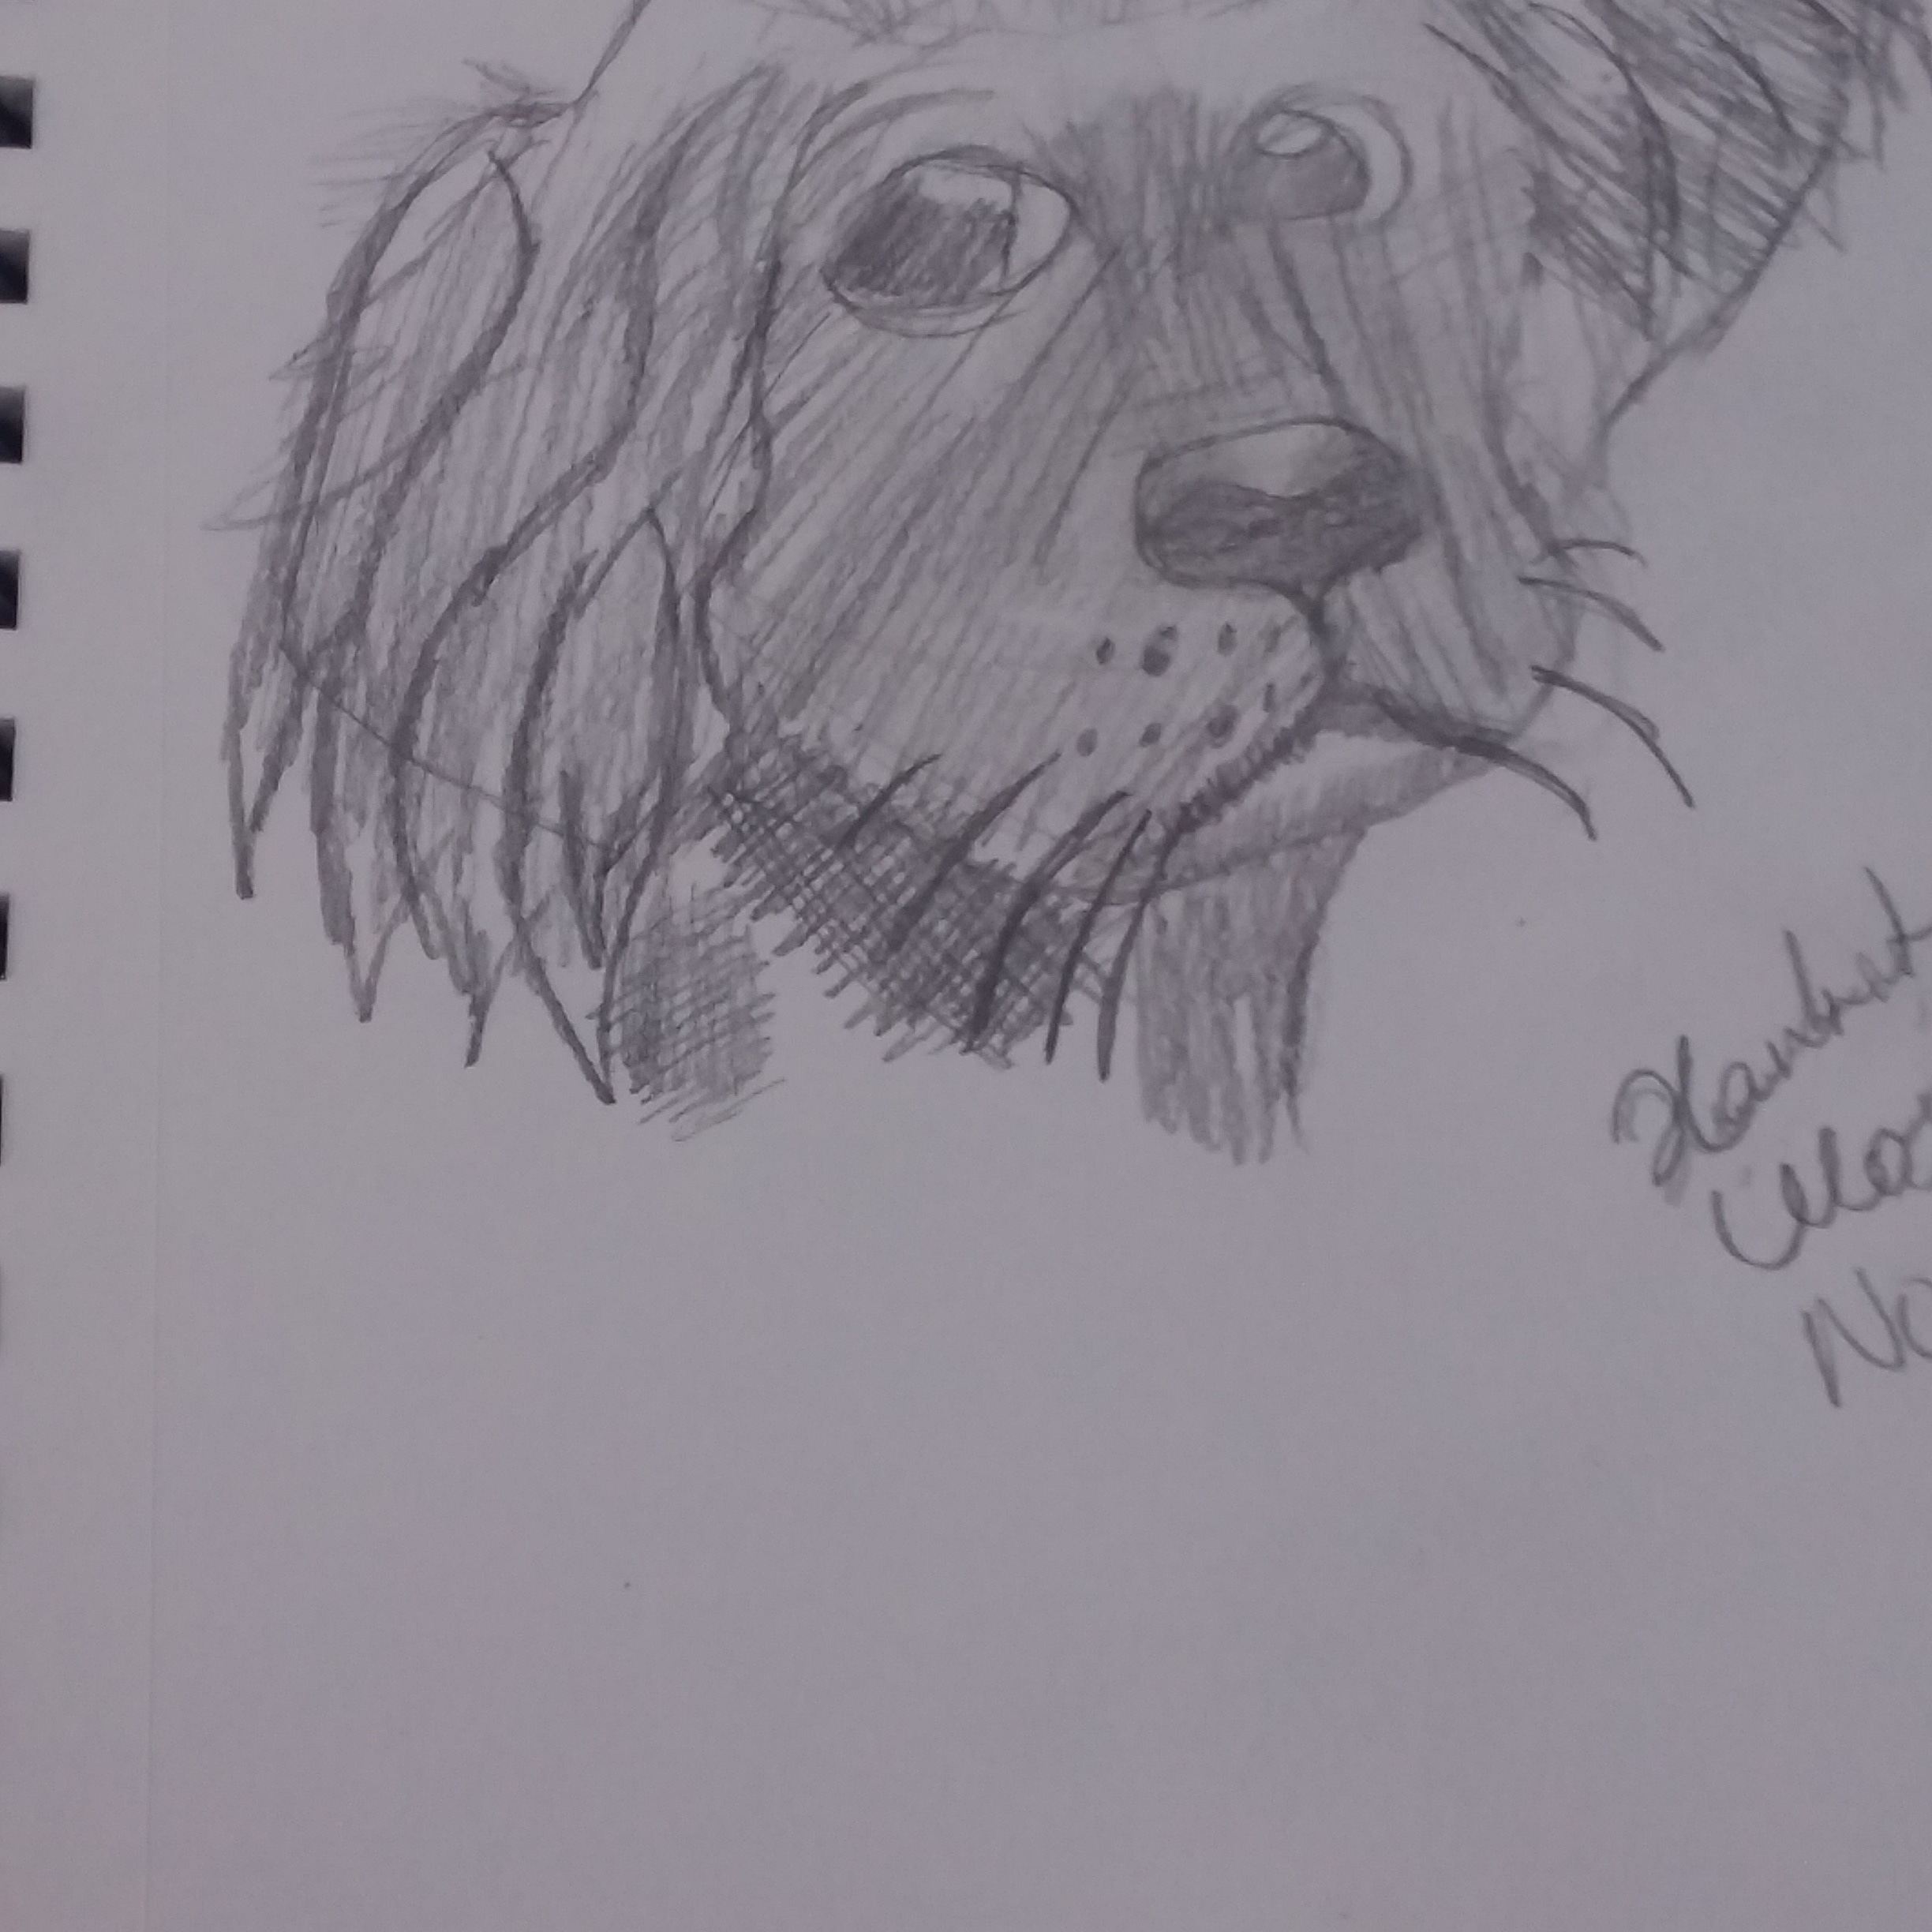 Dog sketch I did.